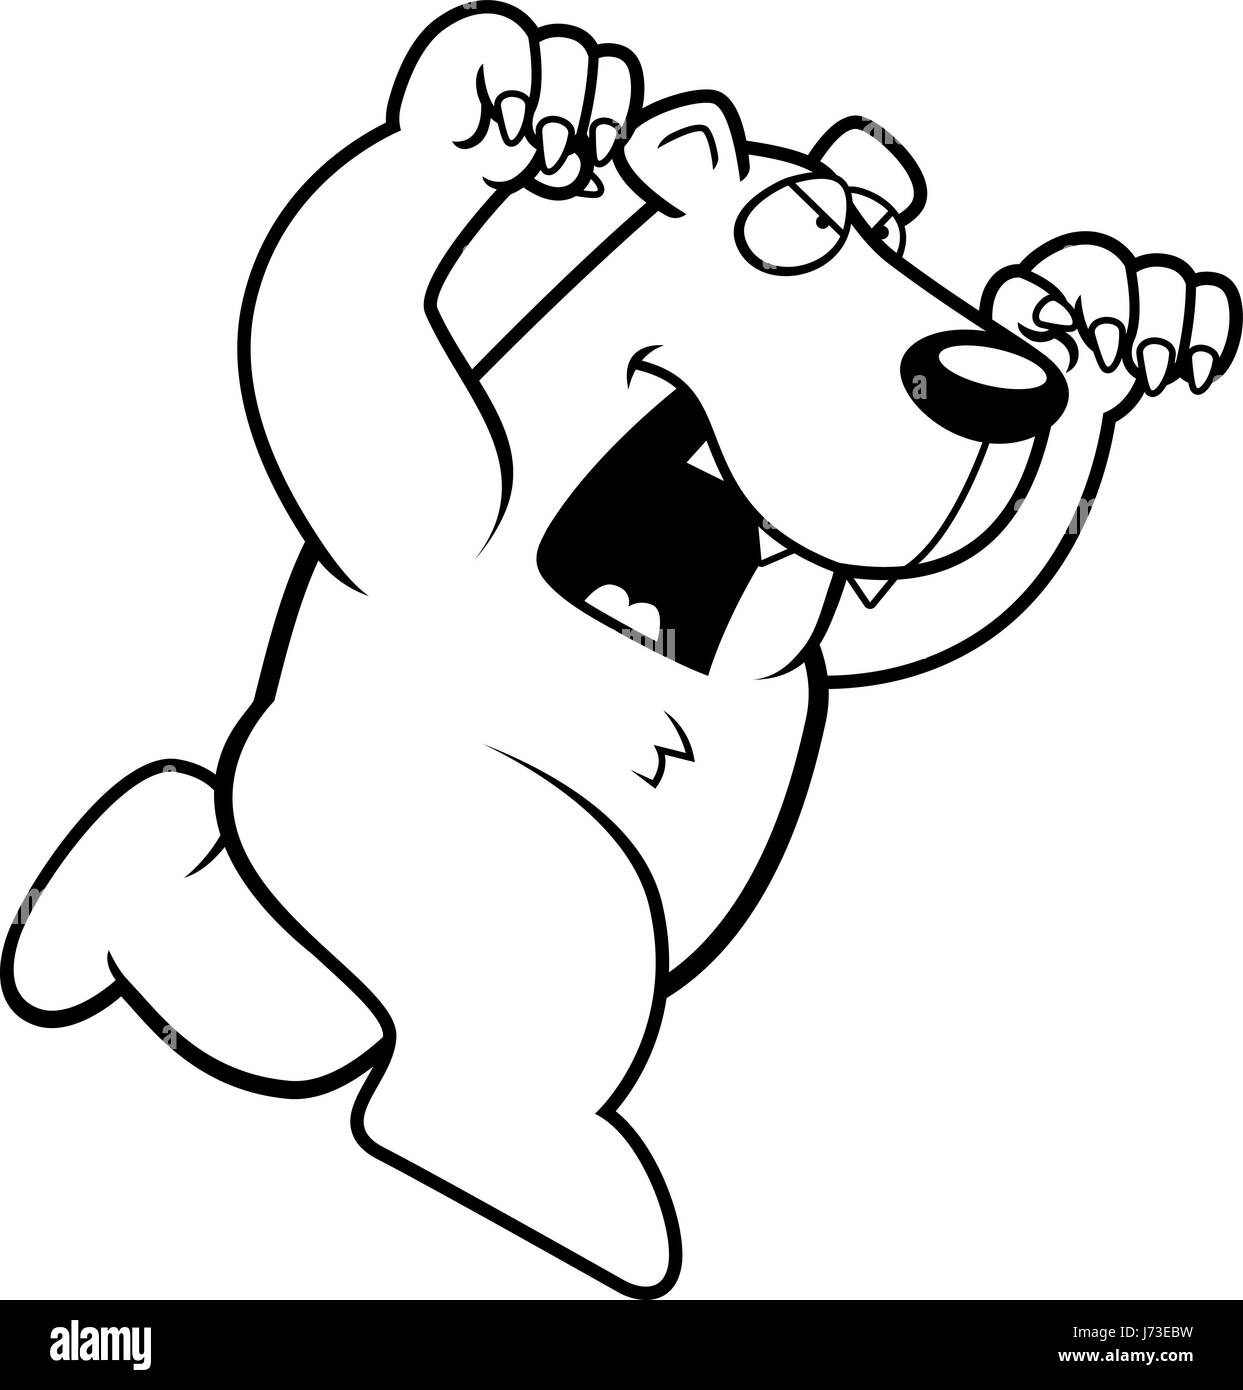 Un cartoon orso polare in esecuzione per attaccare con artigli fuori. Illustrazione Vettoriale